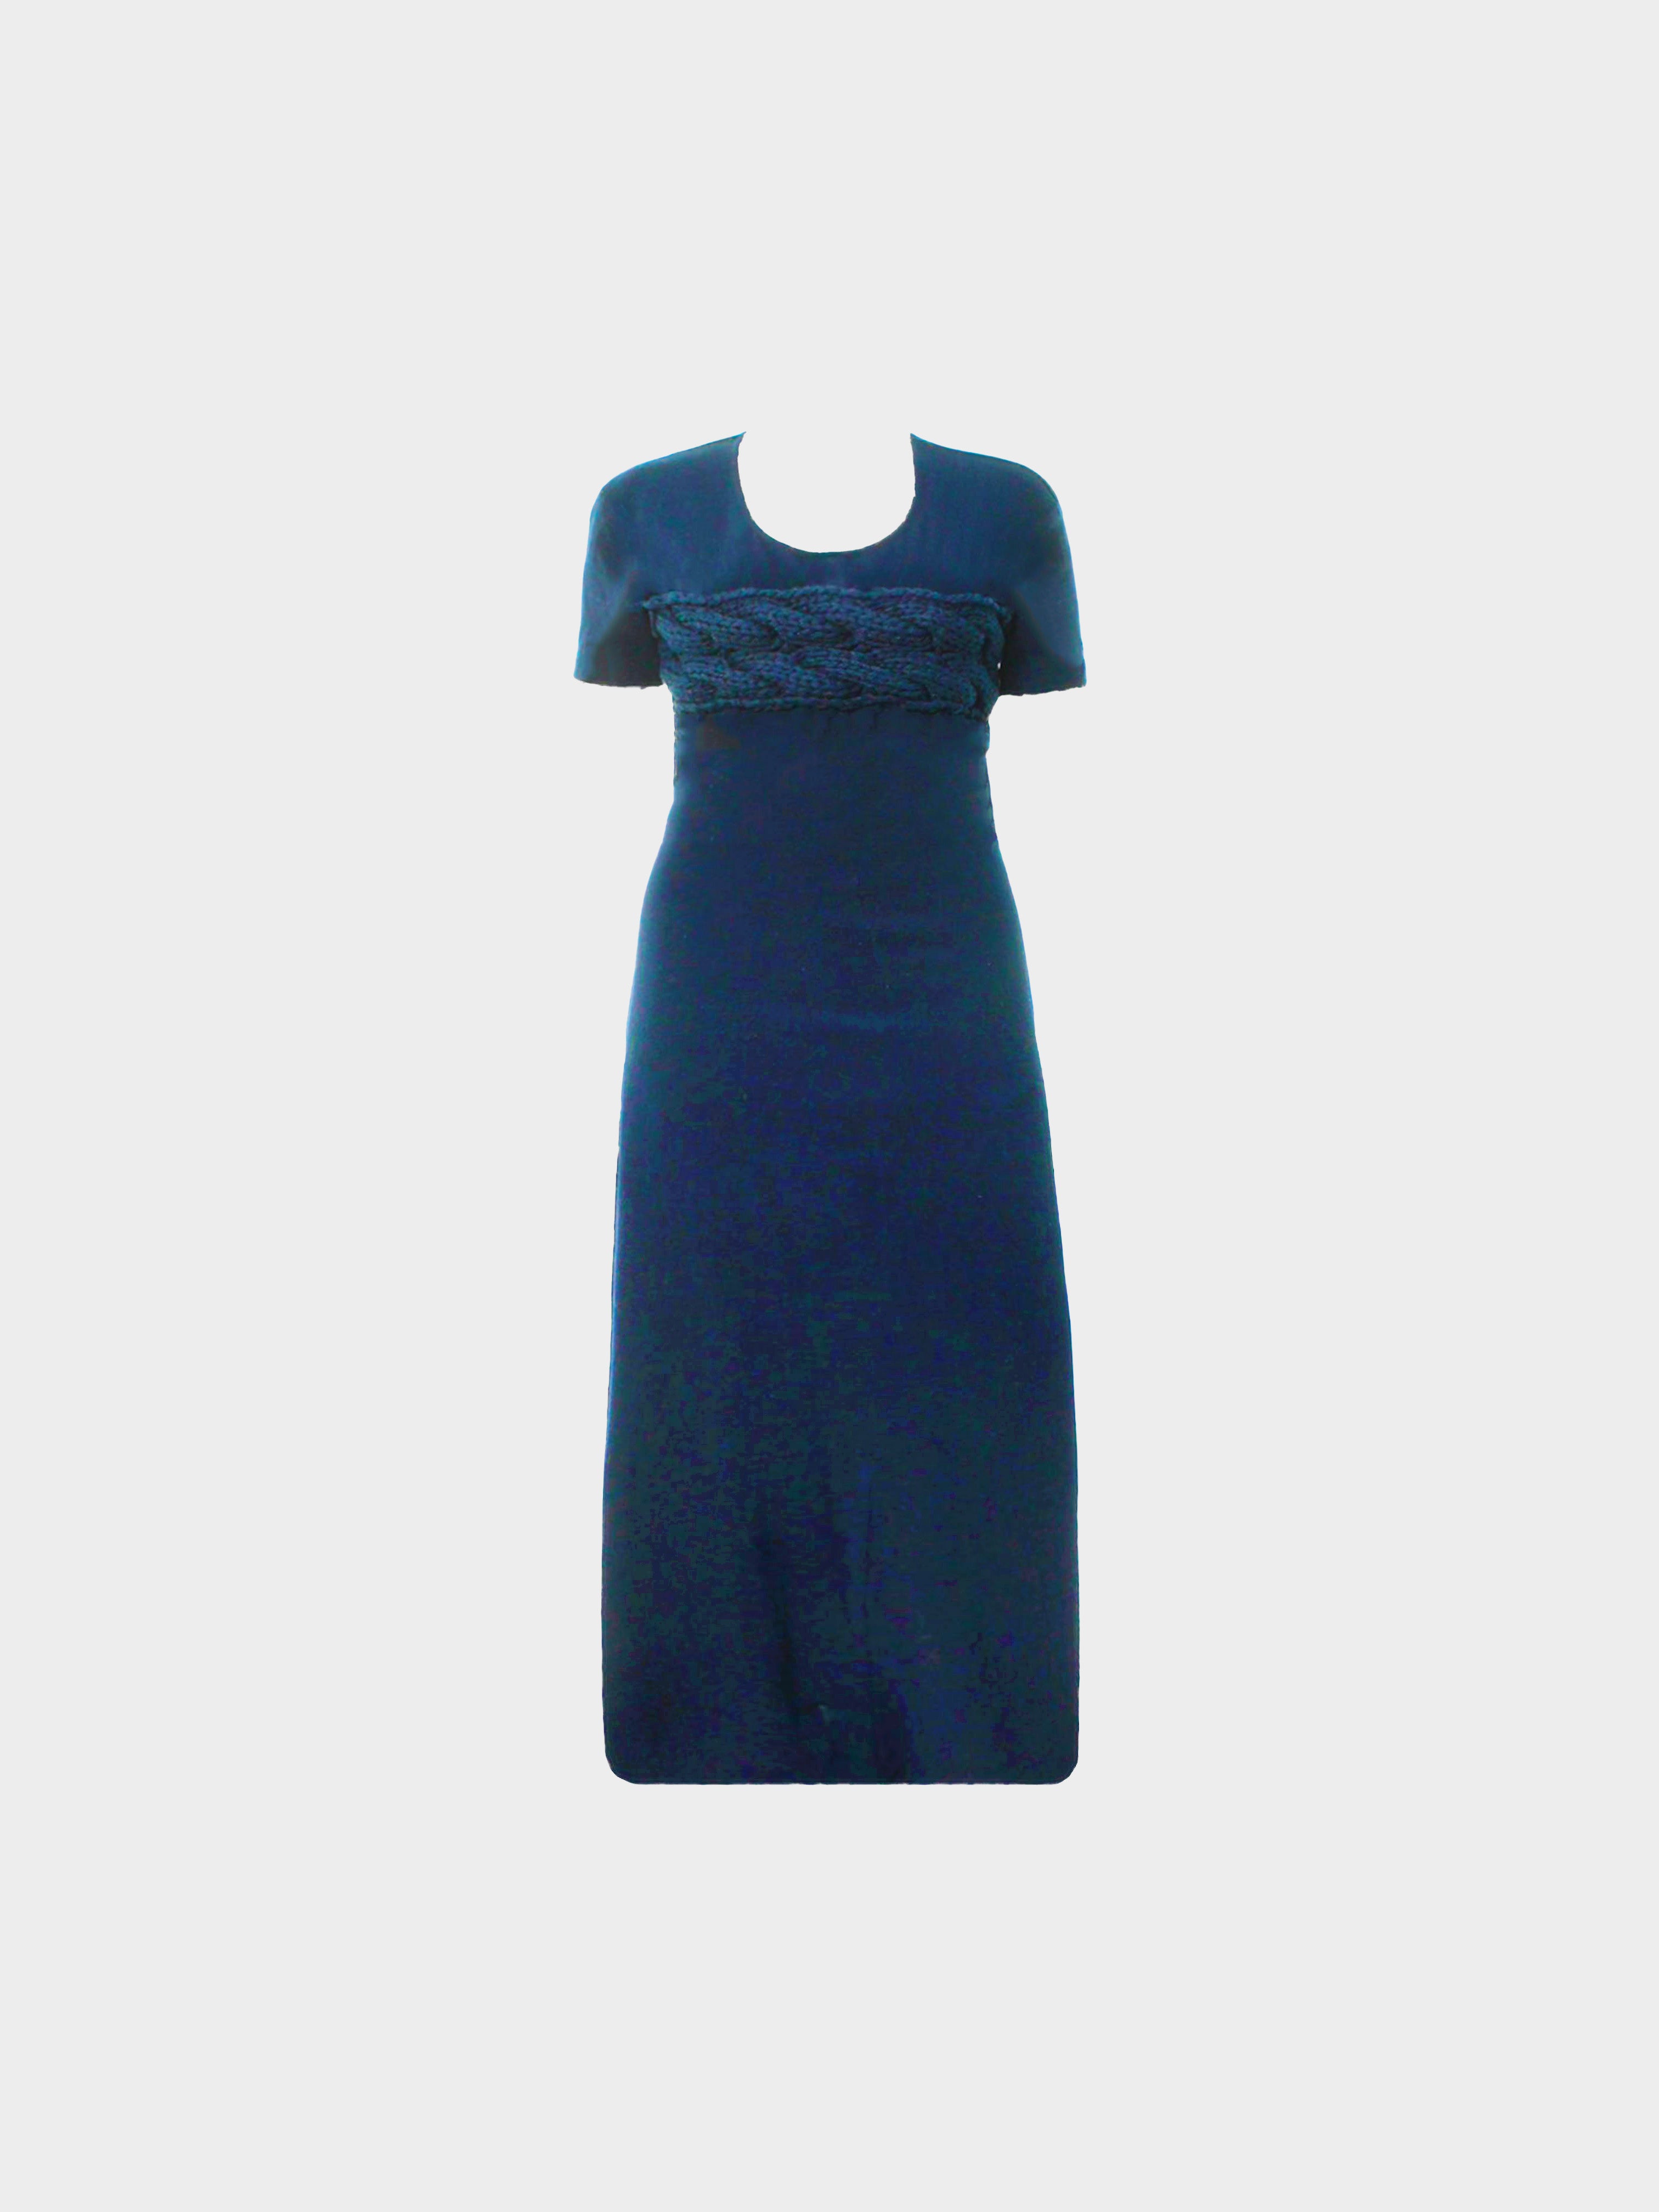 Comme des Garçons SS 1997 Navy Blue Long Dress